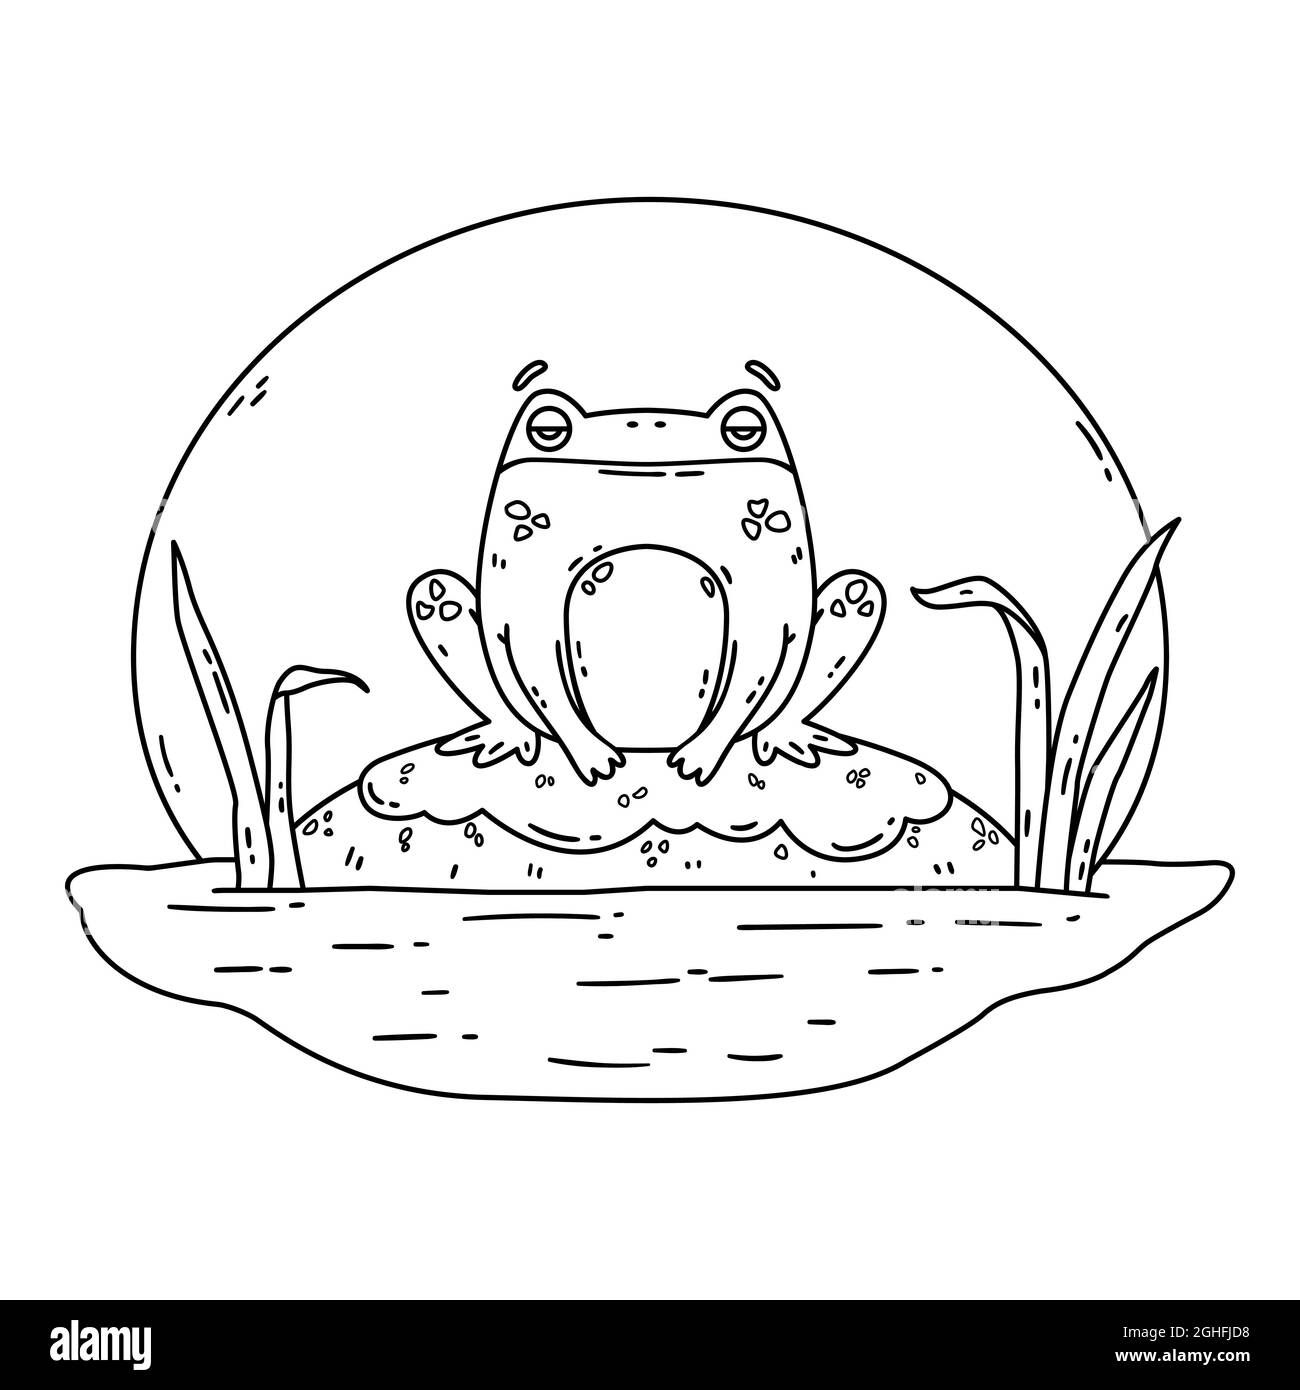 Ein Frosch in einem Sumpf. Kröte sitzt auf einem Felsen. Niedlicher, flacher, handgezeichneter Charakter. Vektordarstellung auf weißem Hintergrund isoliert. Malseite. Stock Vektor